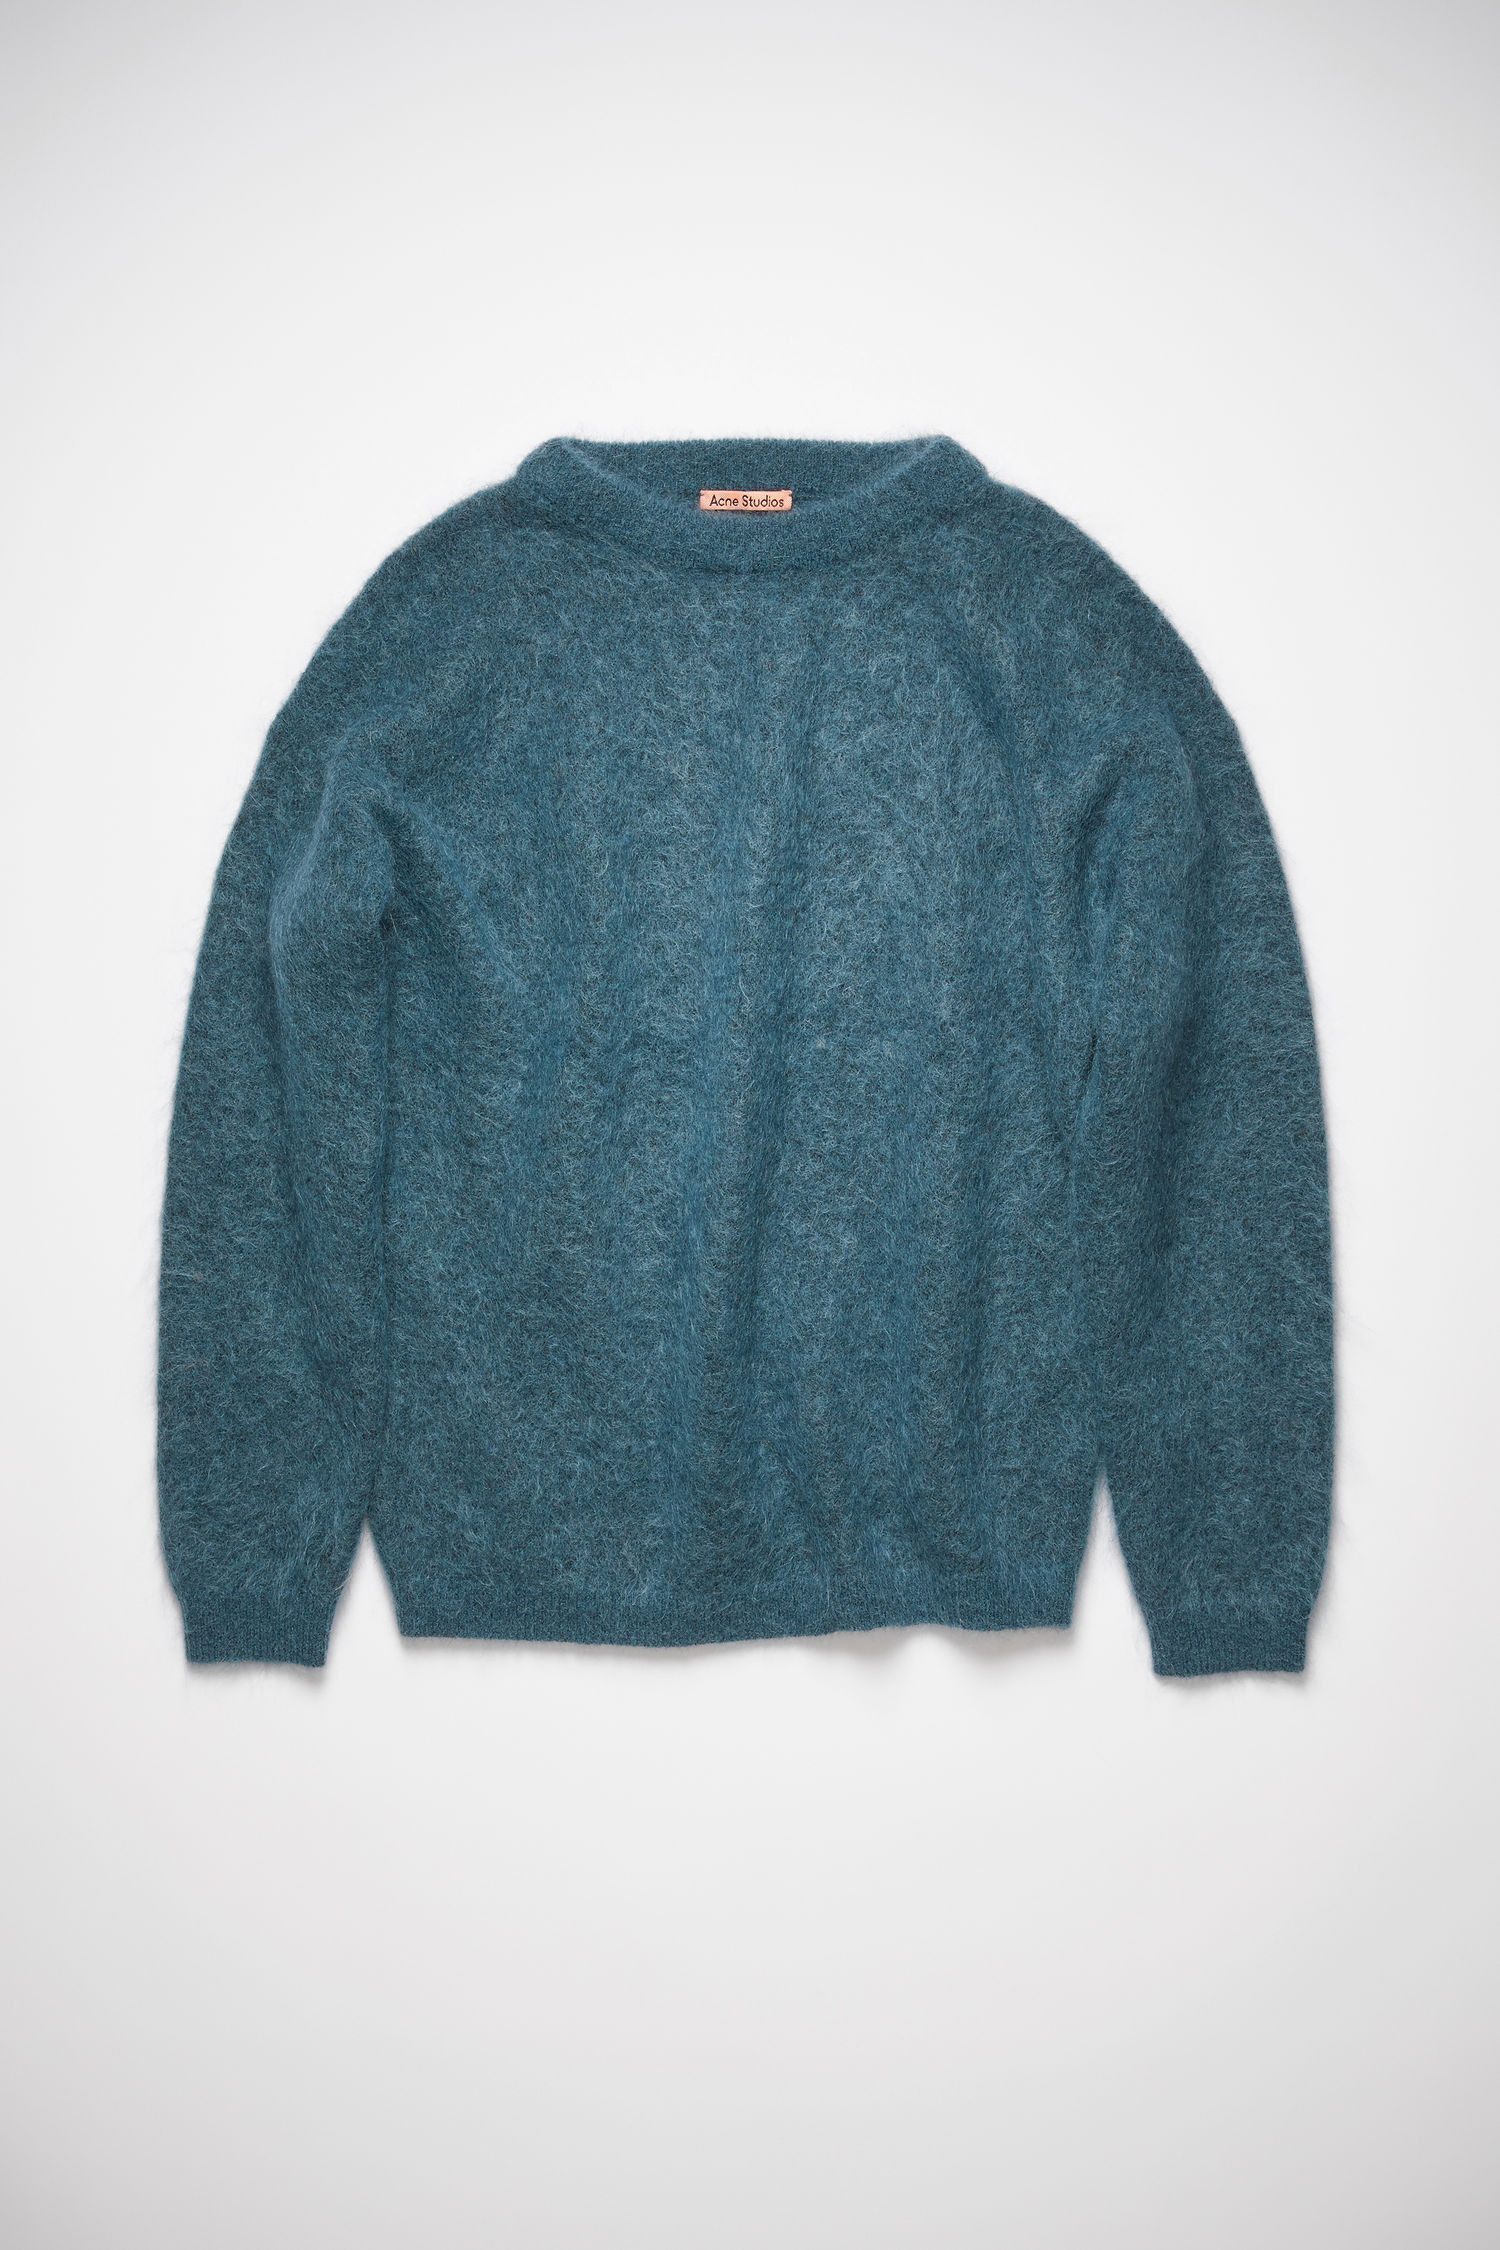 Acne Studios - Crewneck sweater Teal blue